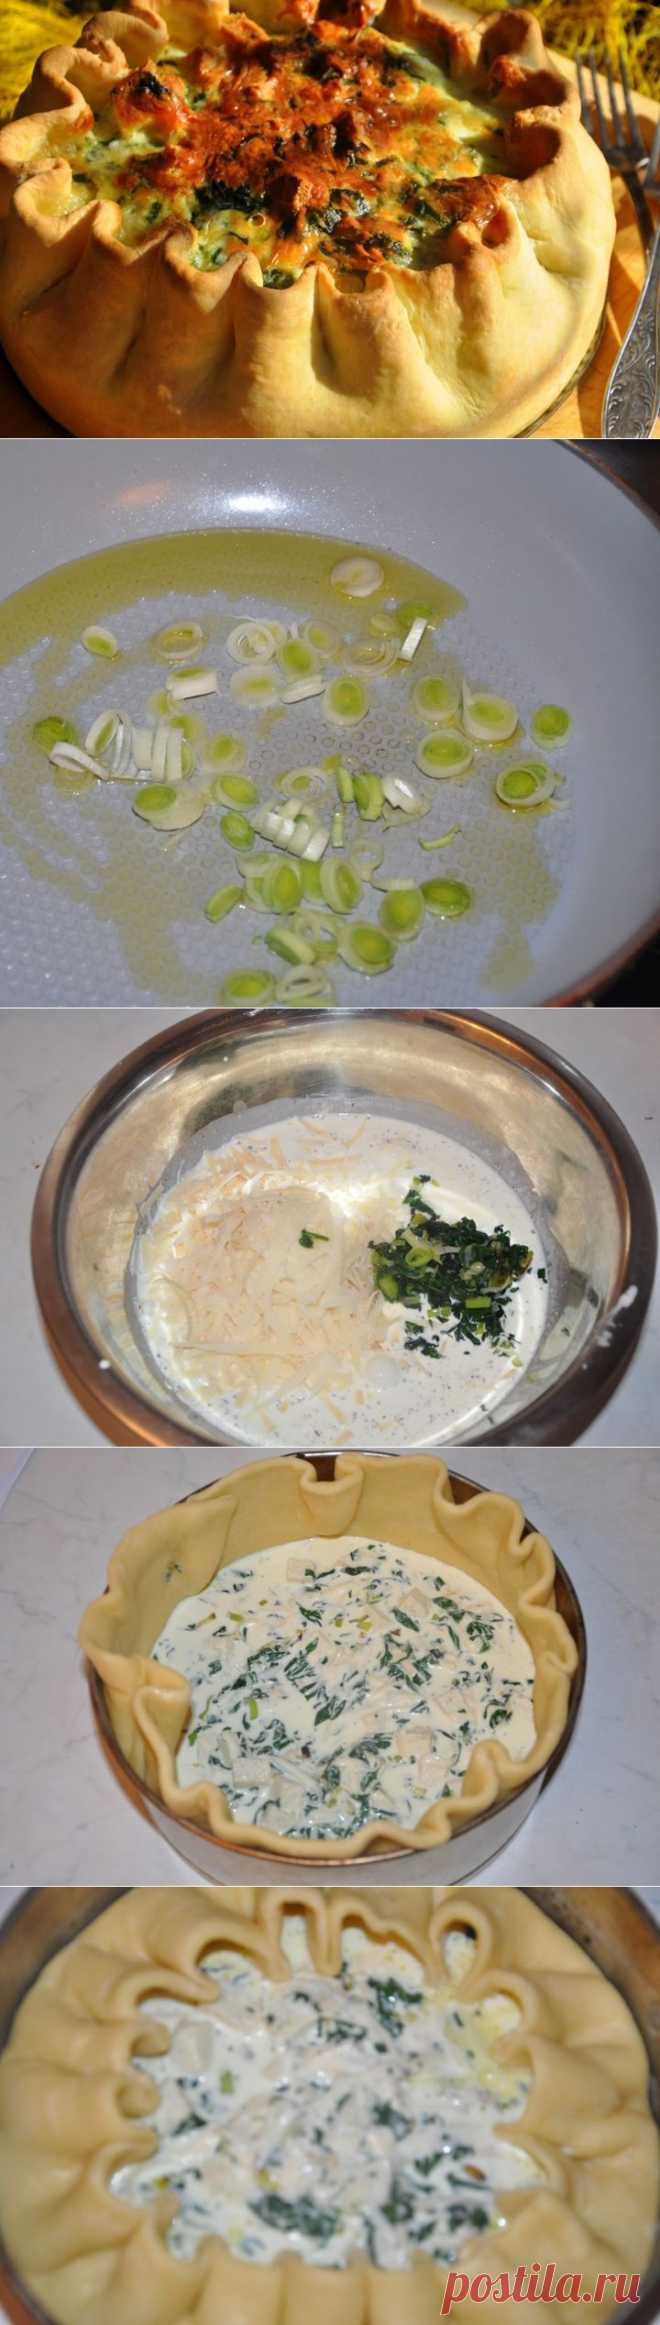 Закусочный пирог с овощами - пошаговый рецепт с фото - закусочный пирог с овощами - как готовить: ингредиенты, состав, время приготовления - Леди@Mail.Ru